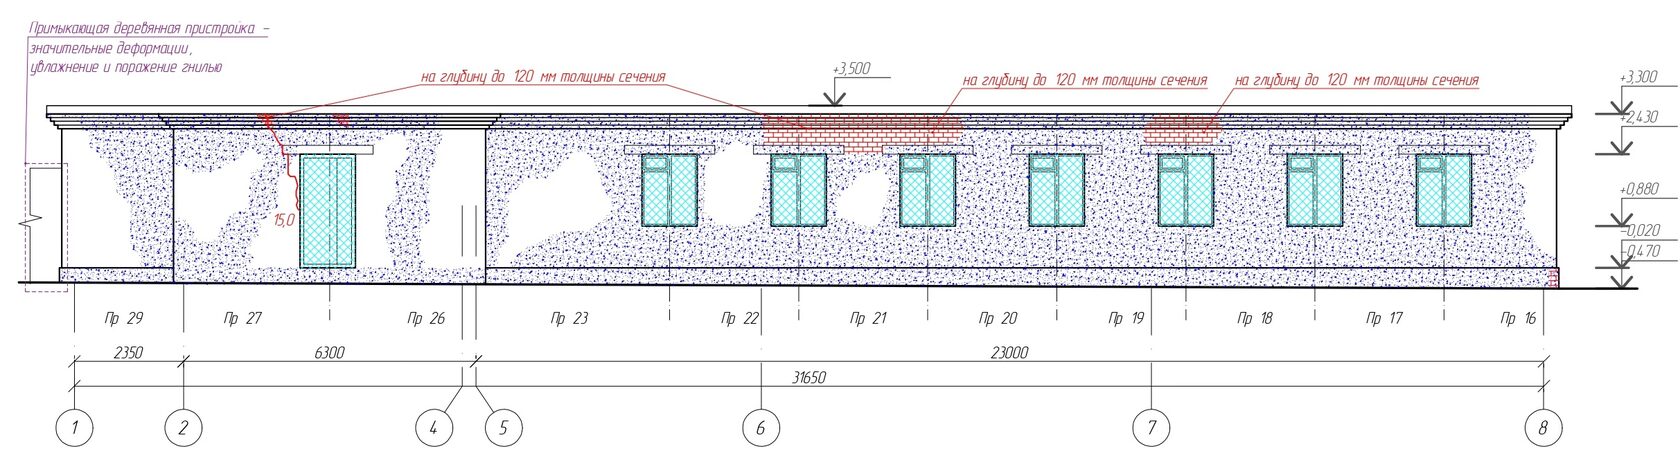 Схема расположения дефектов на фасадах обследуемого здания